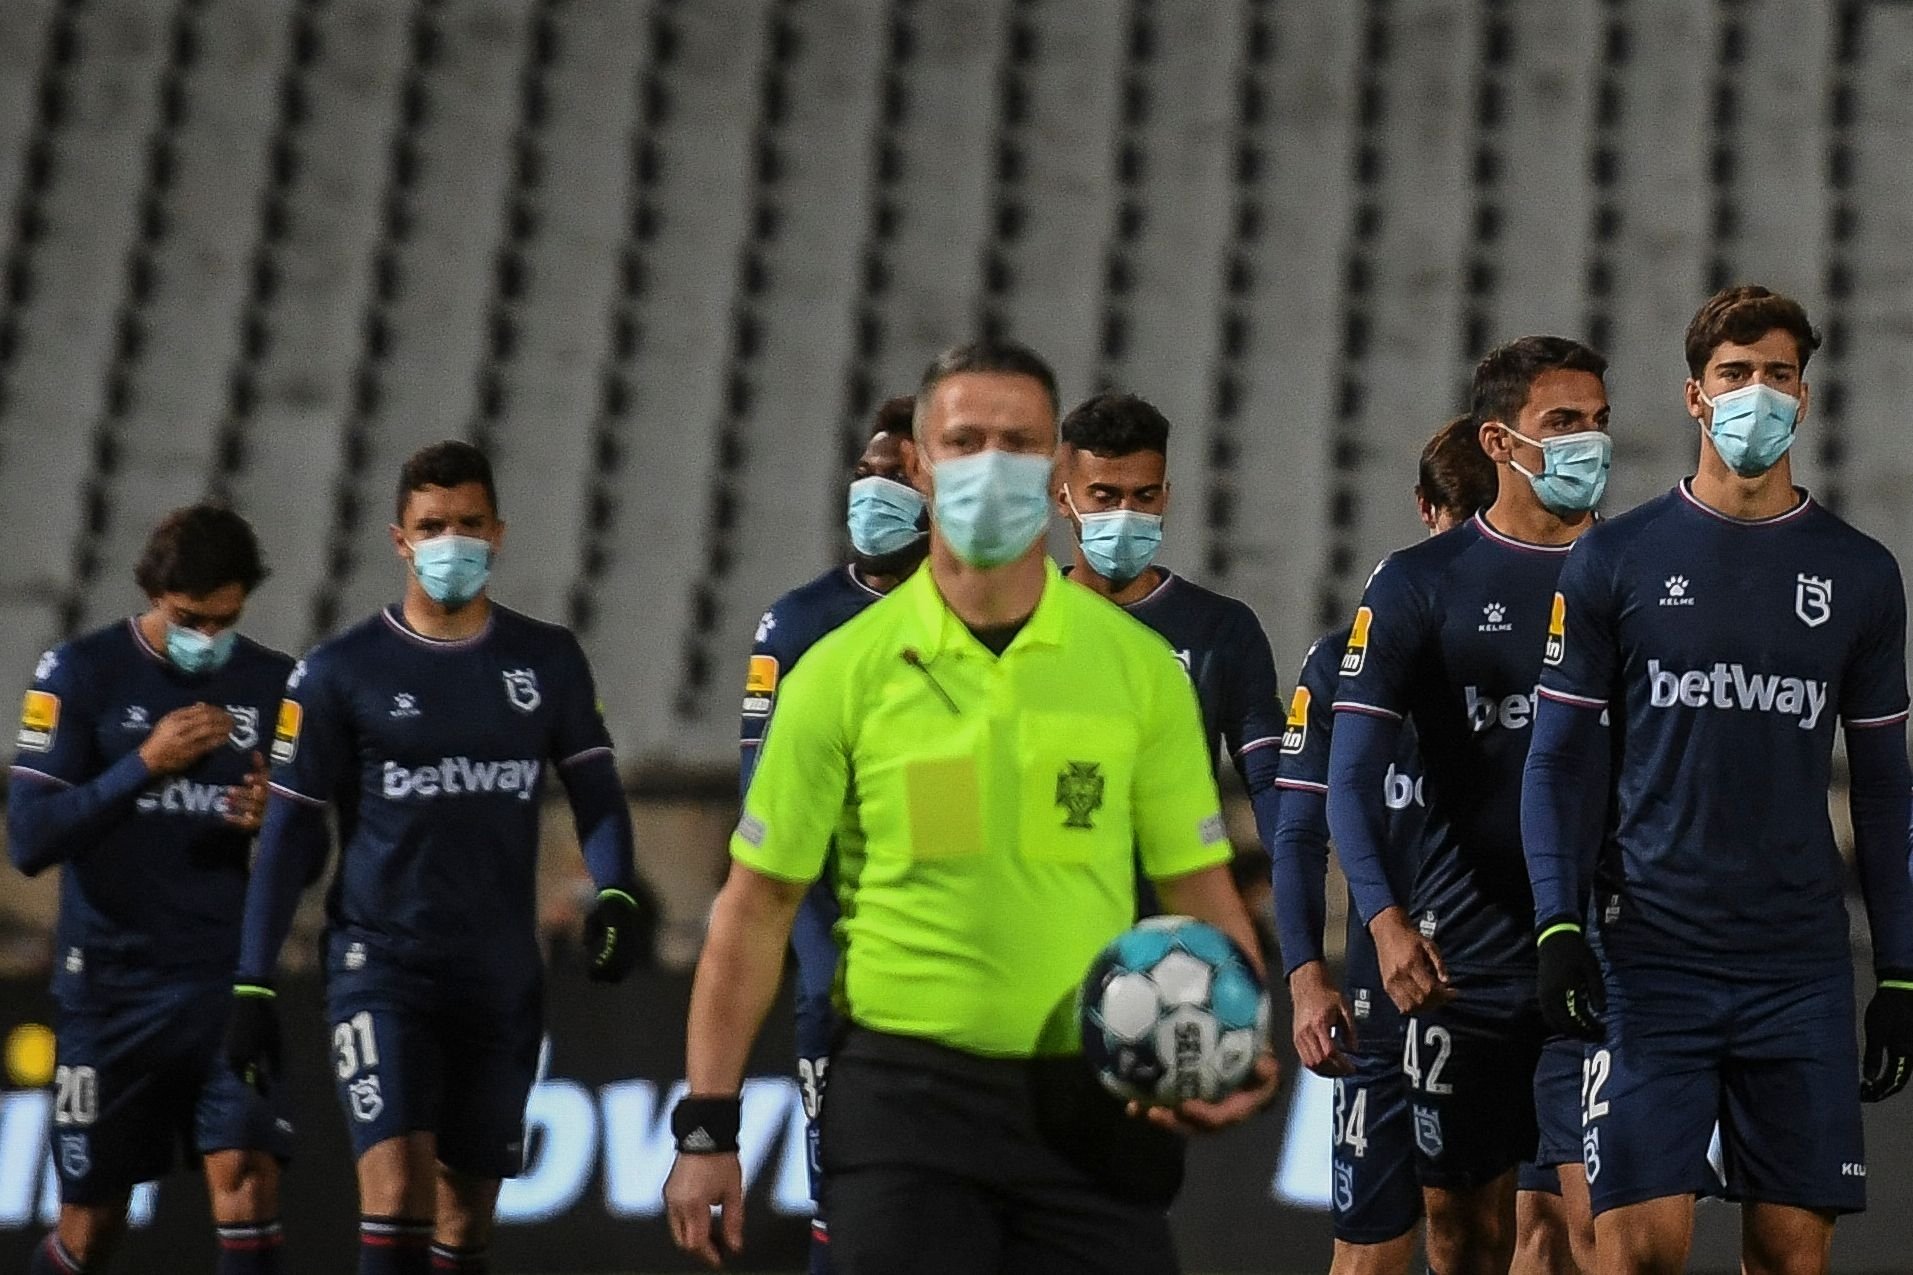 Highland Sædvanlig Næsten død Disgrace': Portuguese league faces scrutiny after team fields 9 men | Daily  Sabah